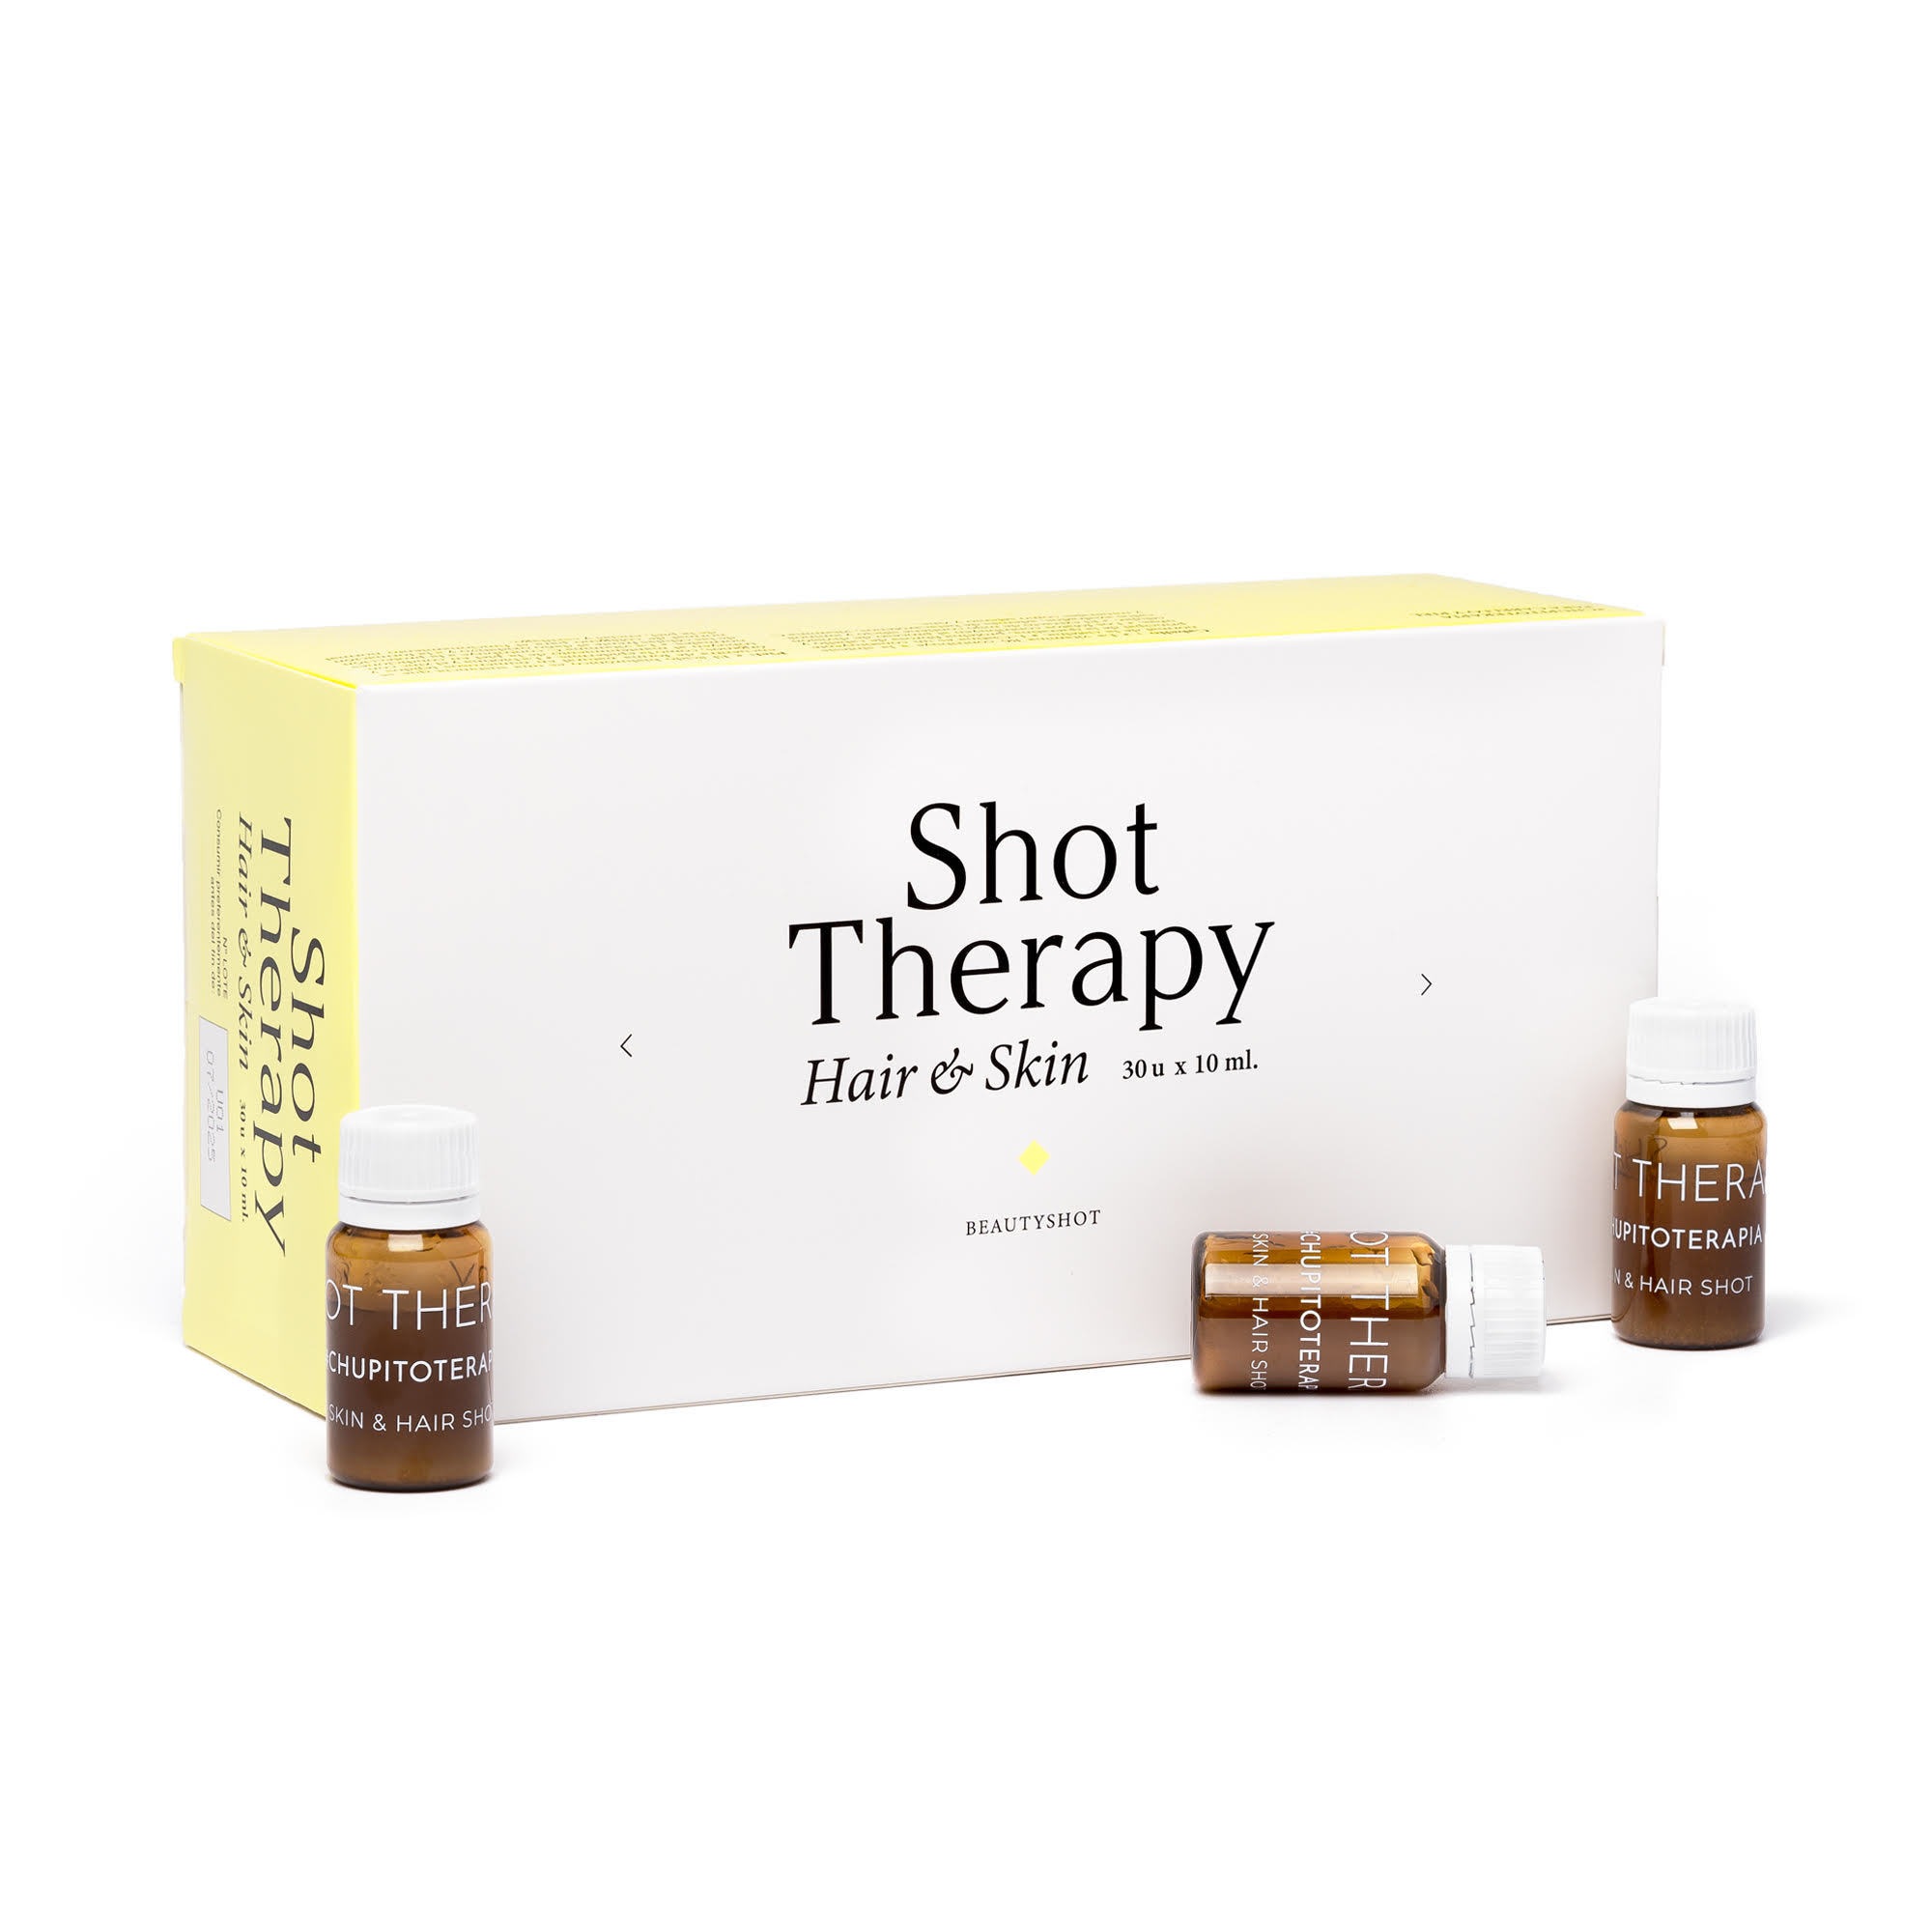 'Shot Theraphy' es una marca registrada por Ikons Gallery, web de cosmtica nicho y especializada, y est en farmacias.